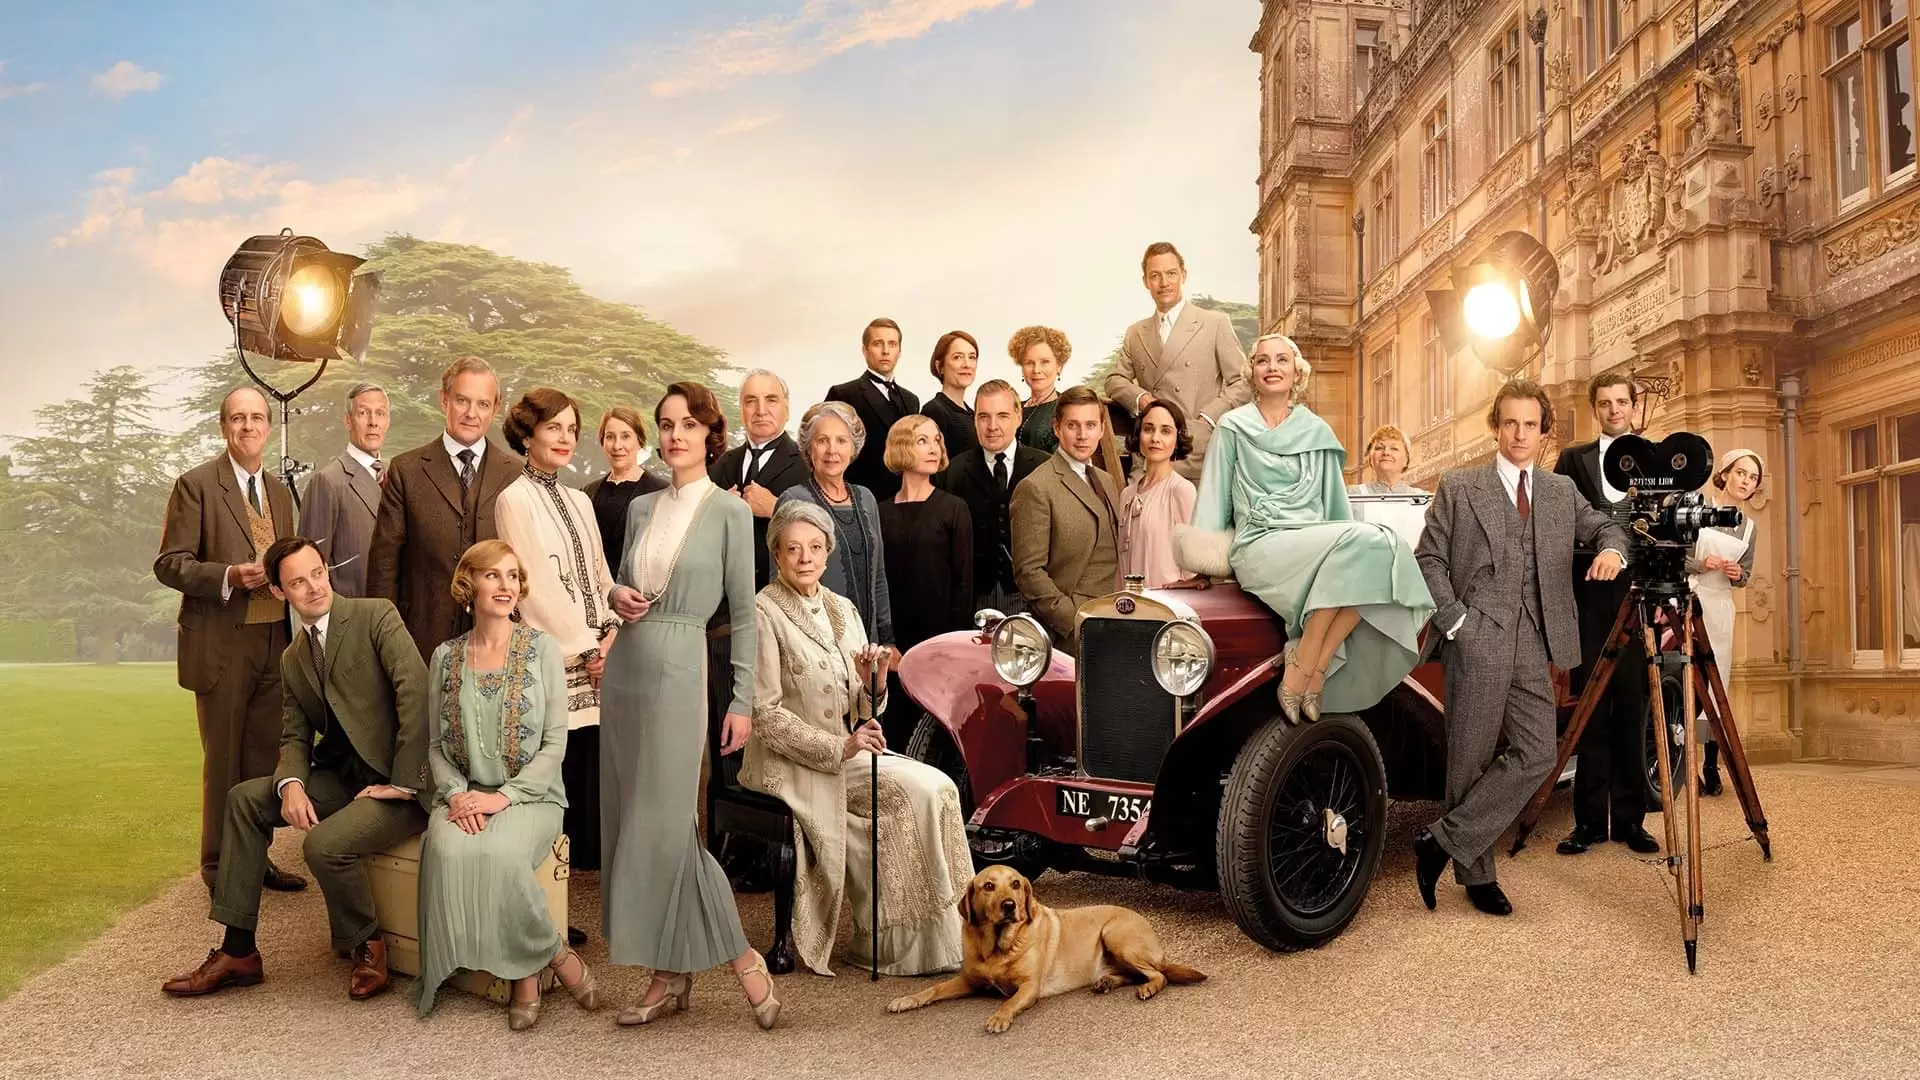 دانلود فیلم Downton Abbey: A New Era 2022 (دانتون اَبی: یک دوره جدید) با زیرنویس فارسی و تماشای آنلاین